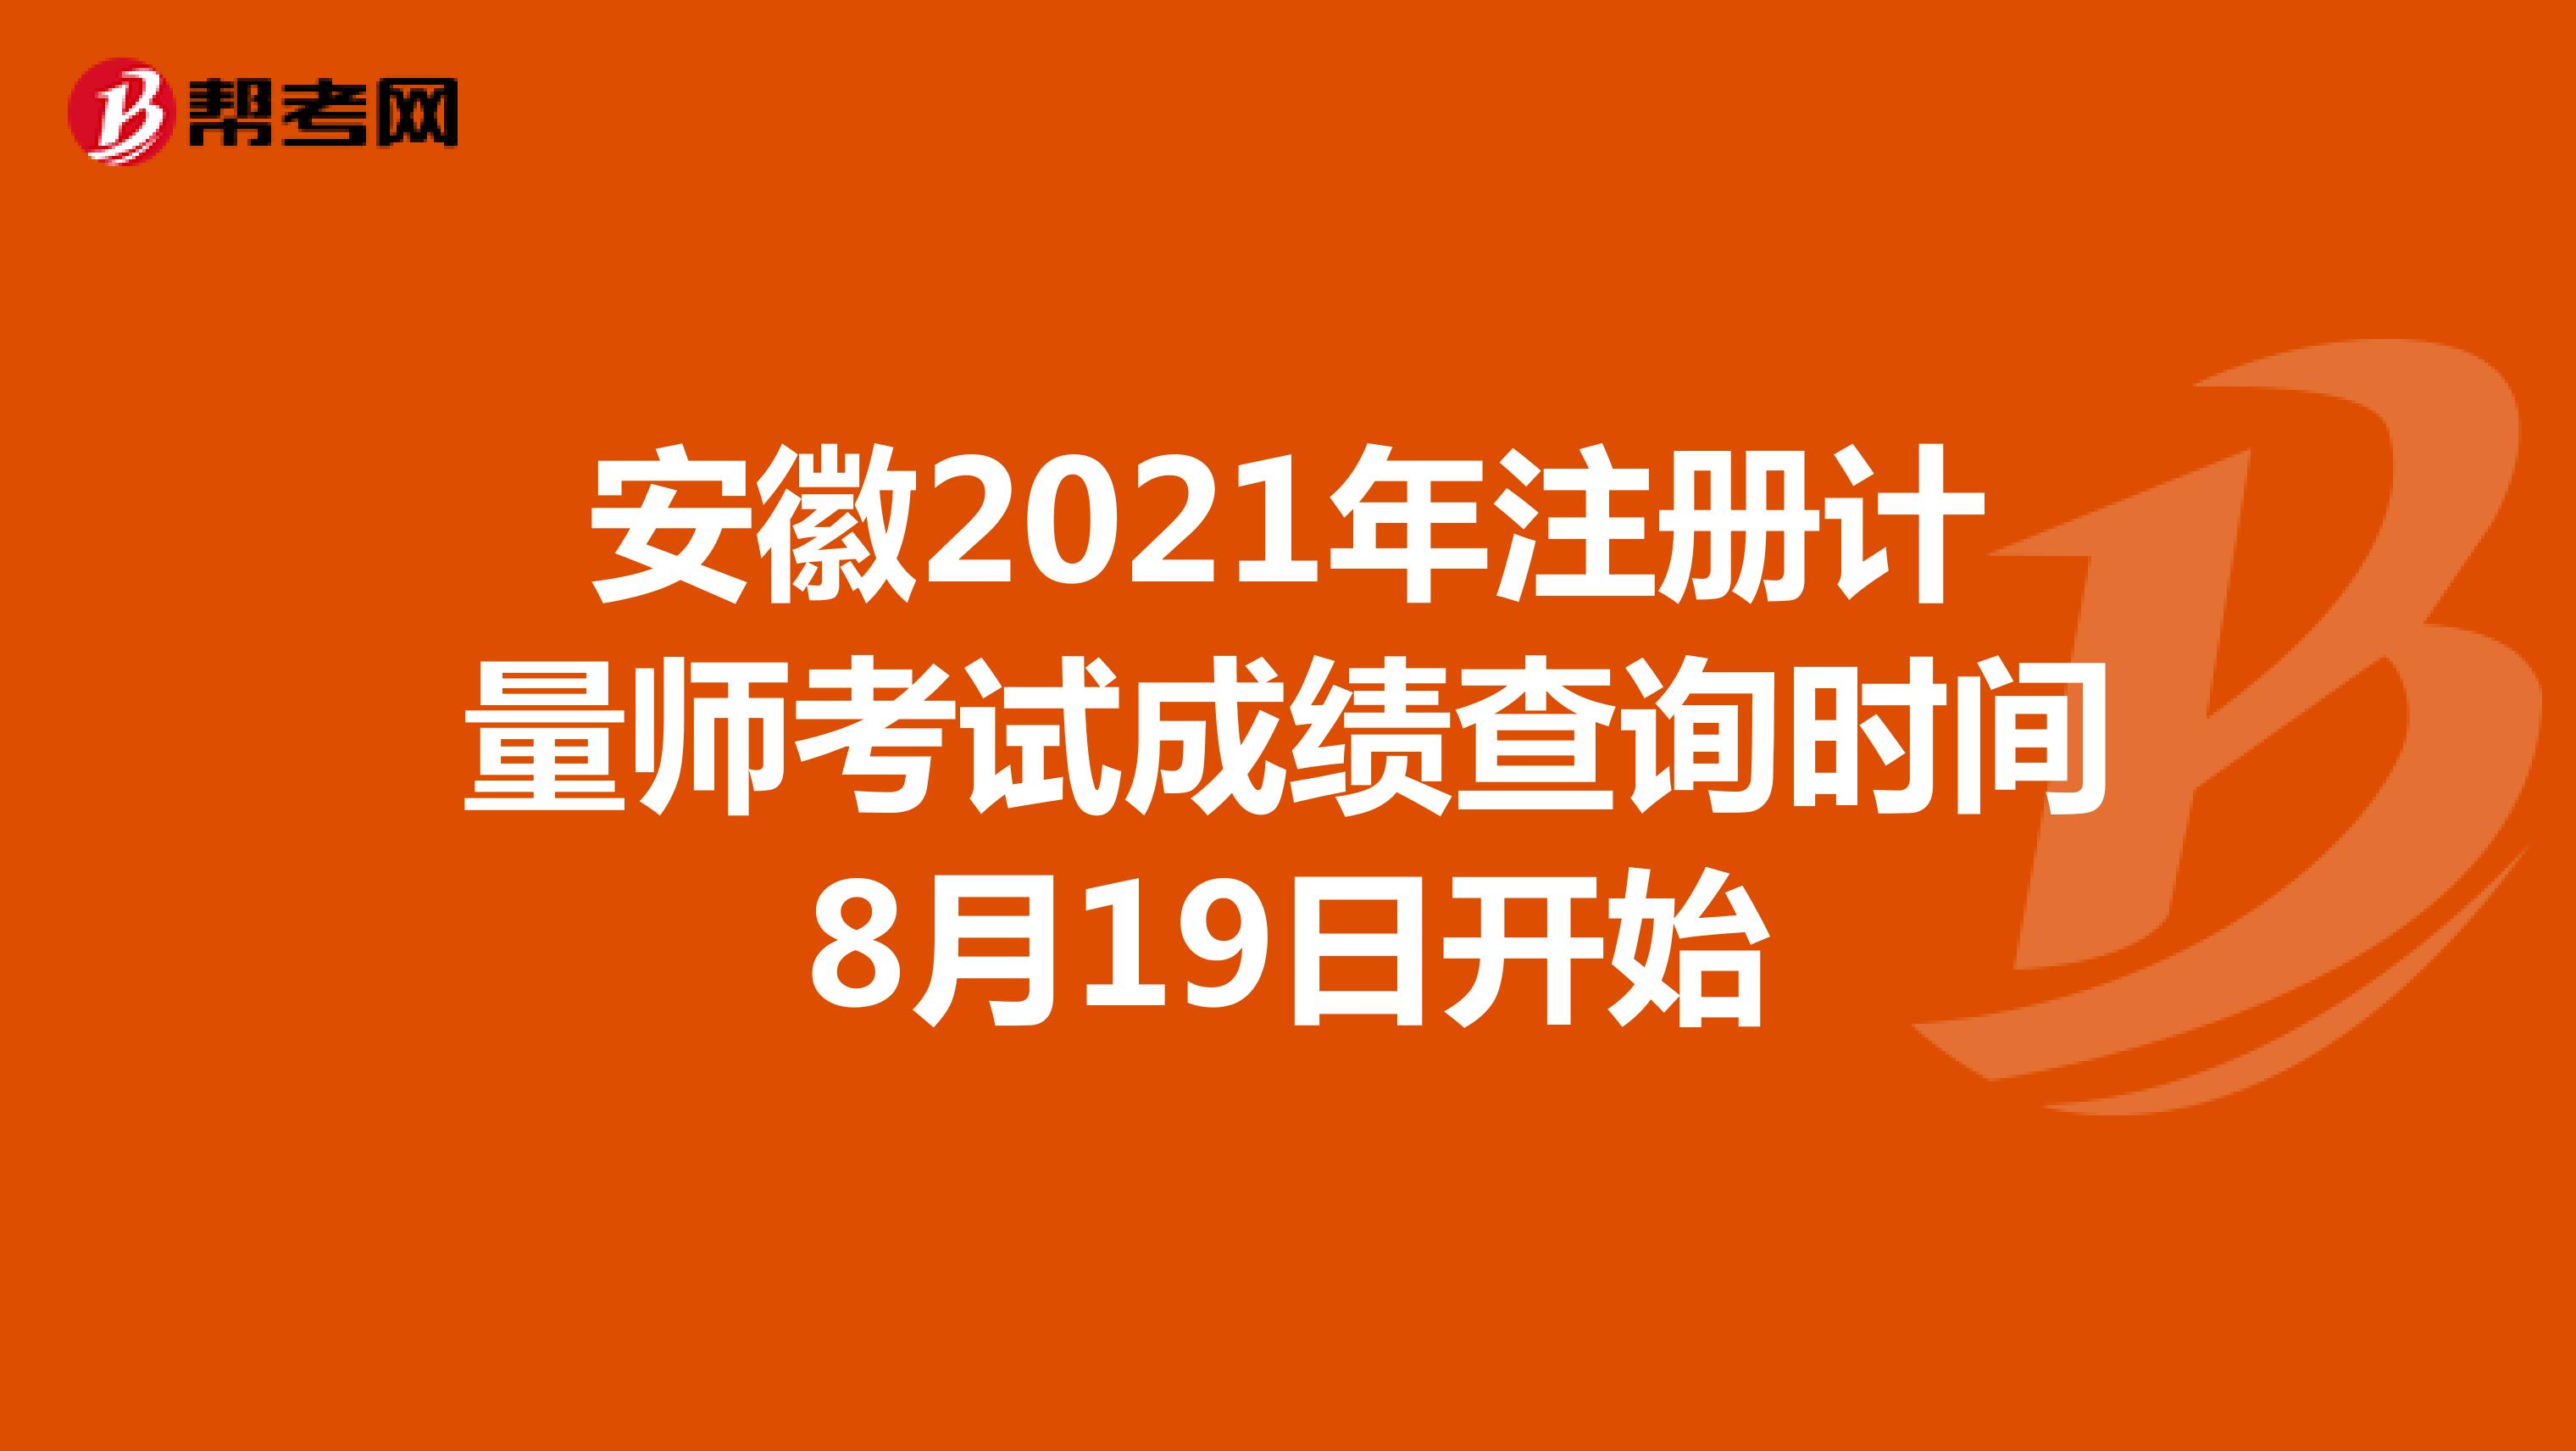 安徽2021年注册计量师考试成绩查询时间8月19日开始